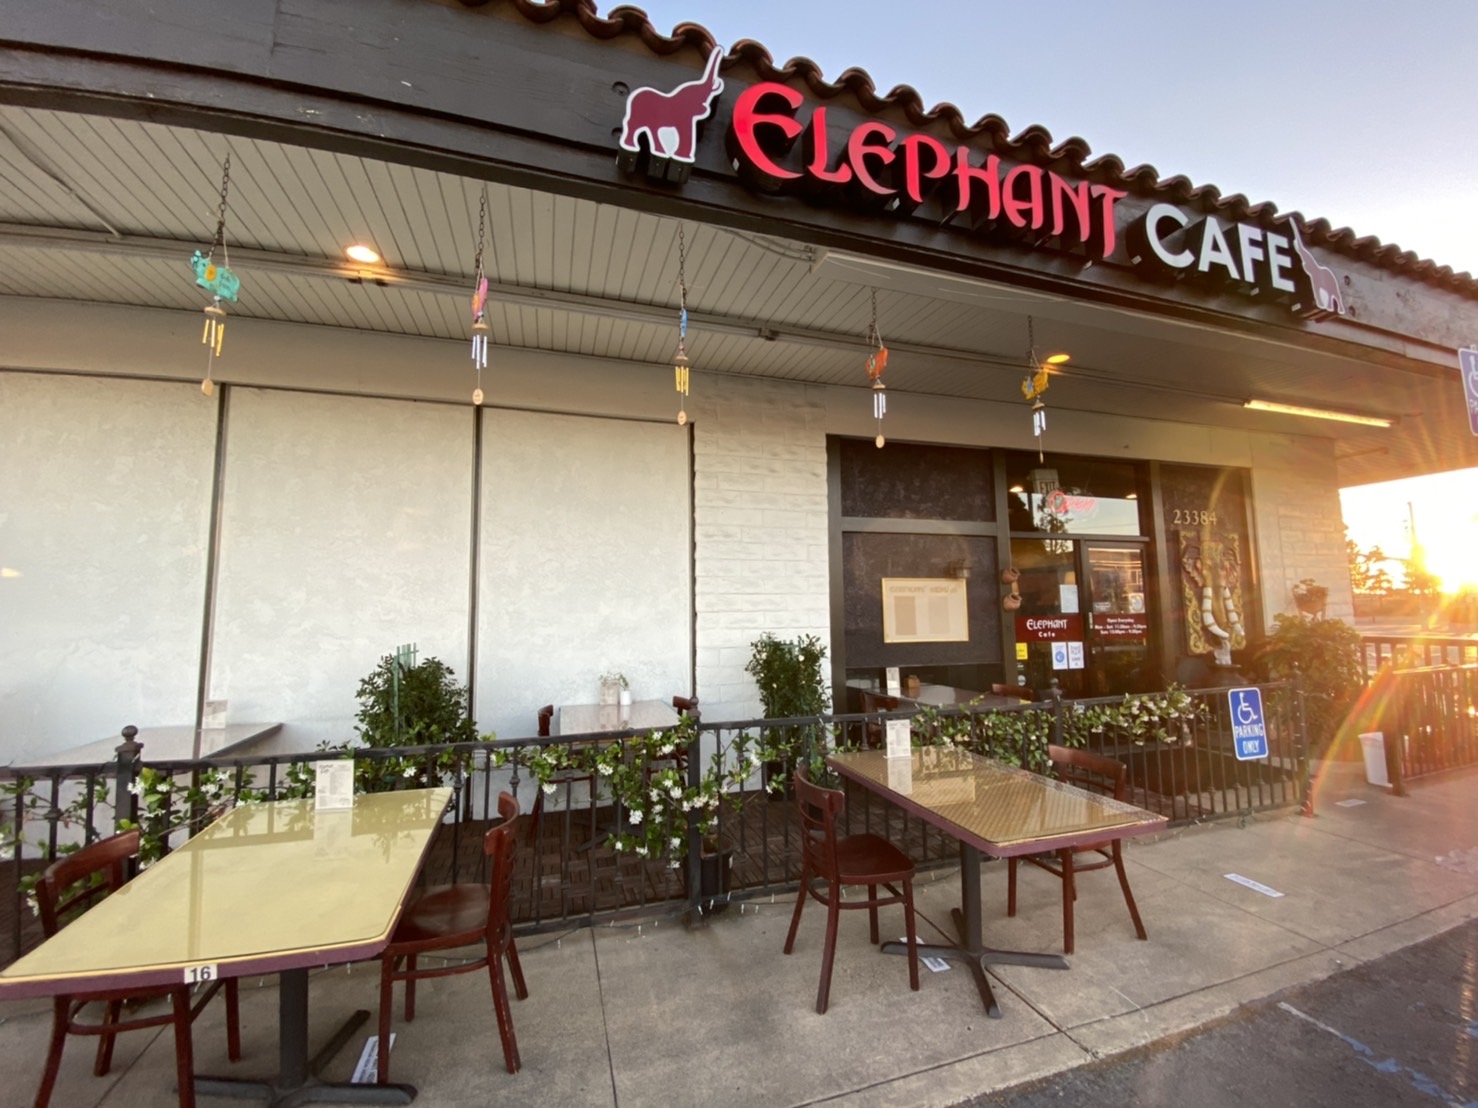 Elephant cafe